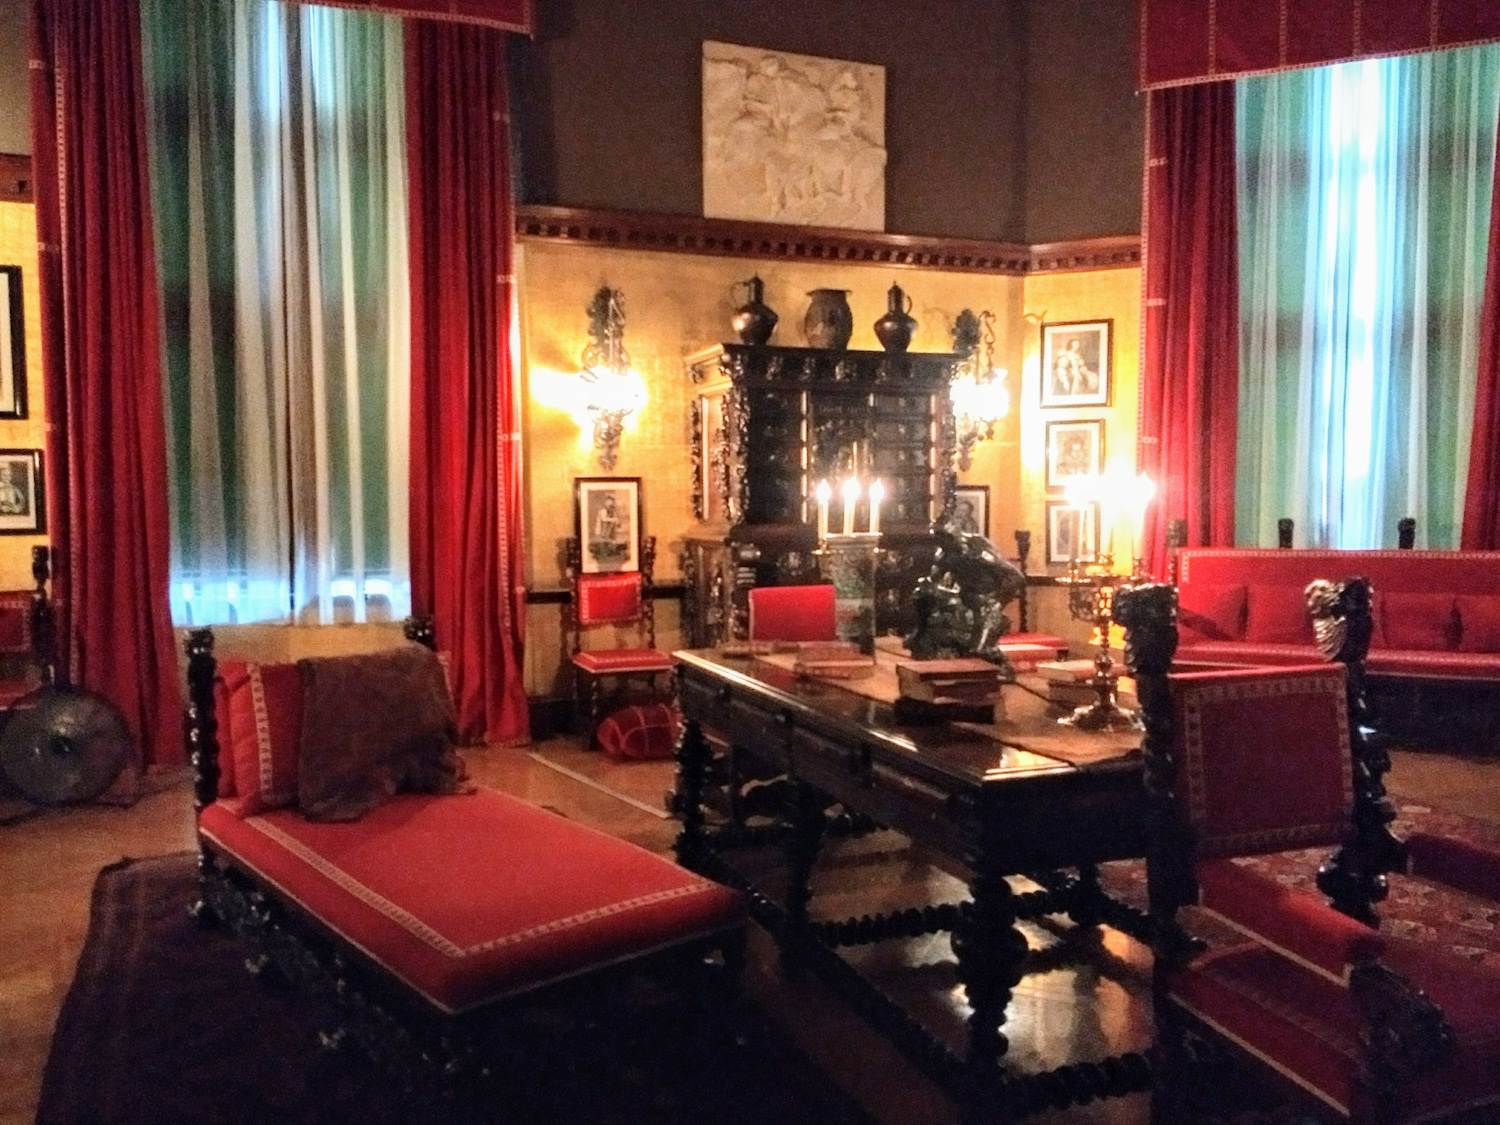 George Vanderbilt's bedroom-17th century Portuguese Baroque furniture